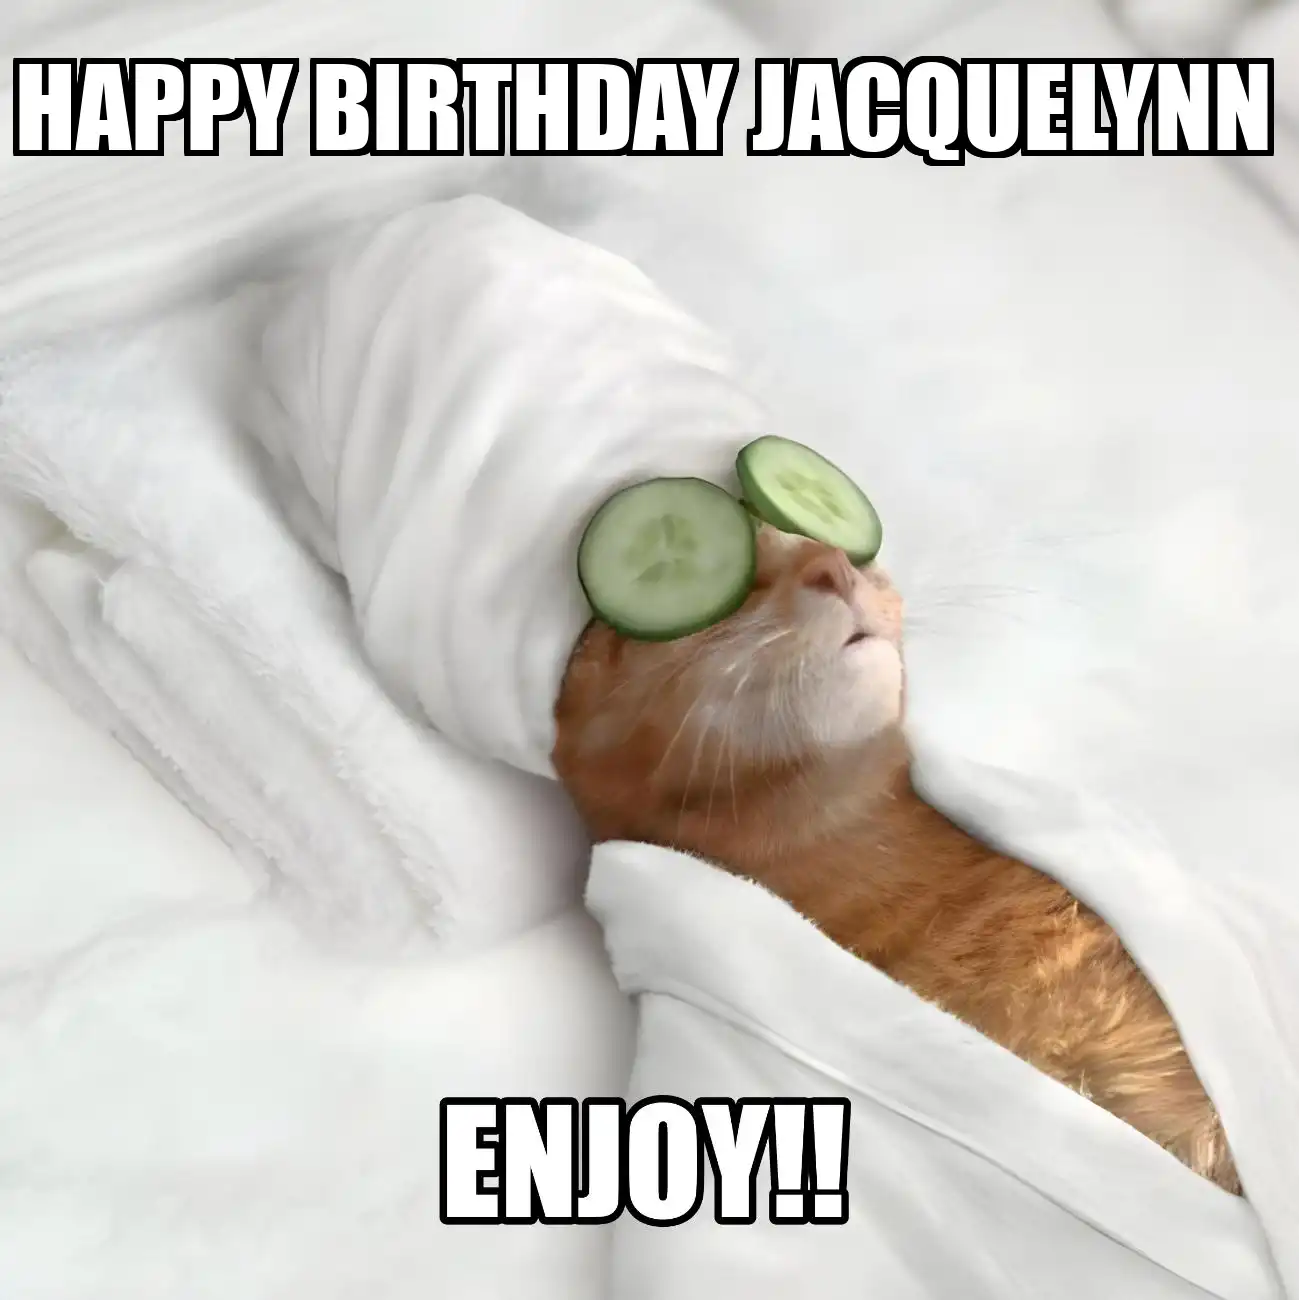 Happy Birthday Jacquelynn Enjoy Cat Meme